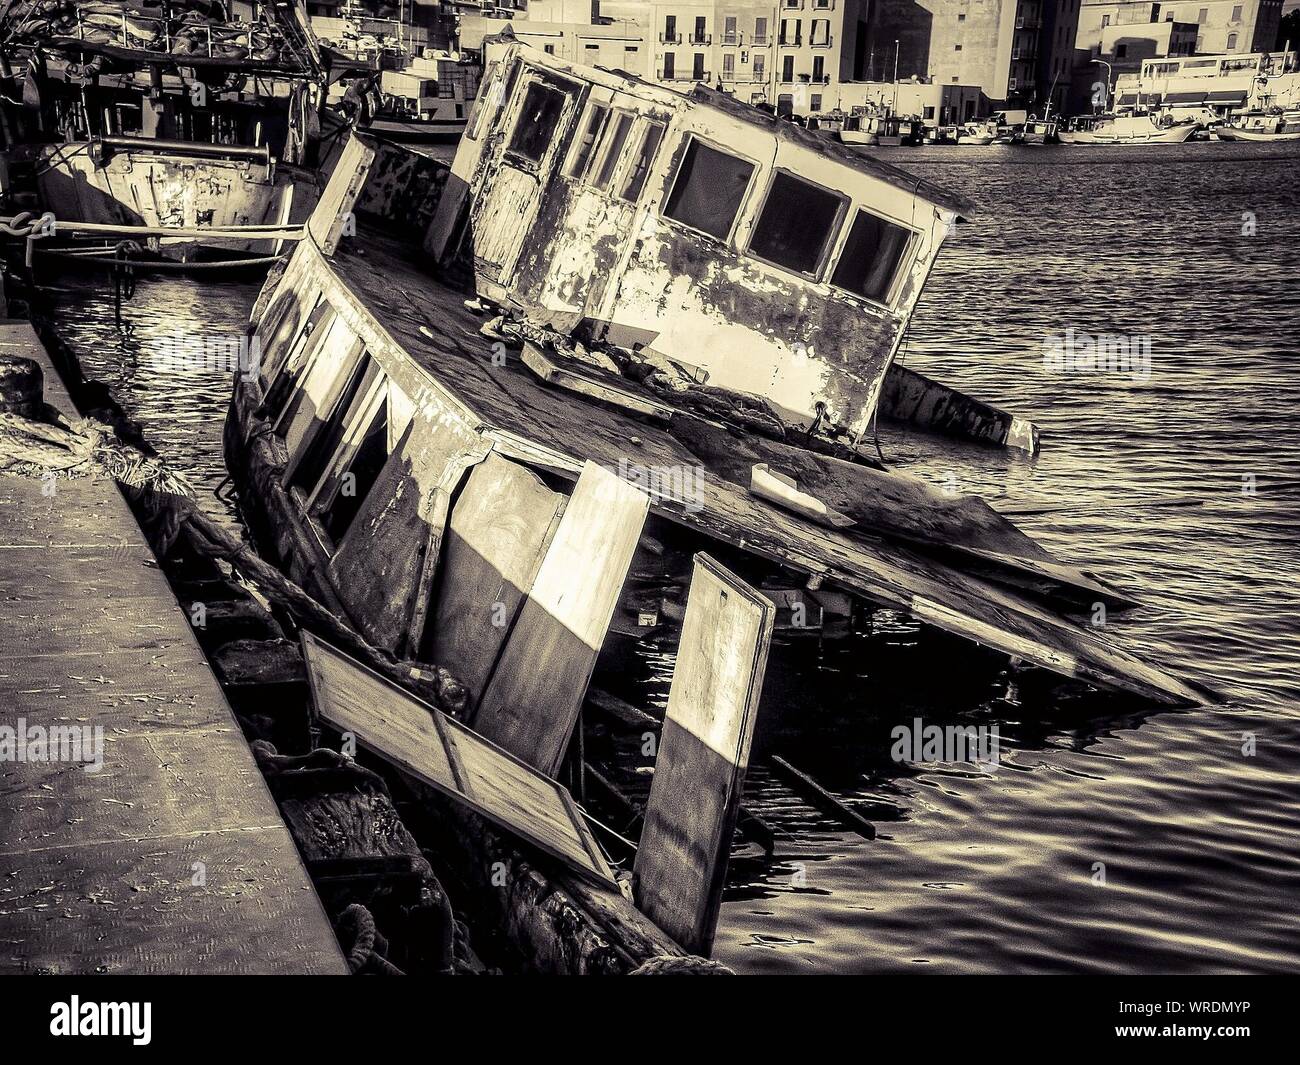 Abandoned Damaged Boat Sinking At Harbor Stock Photo